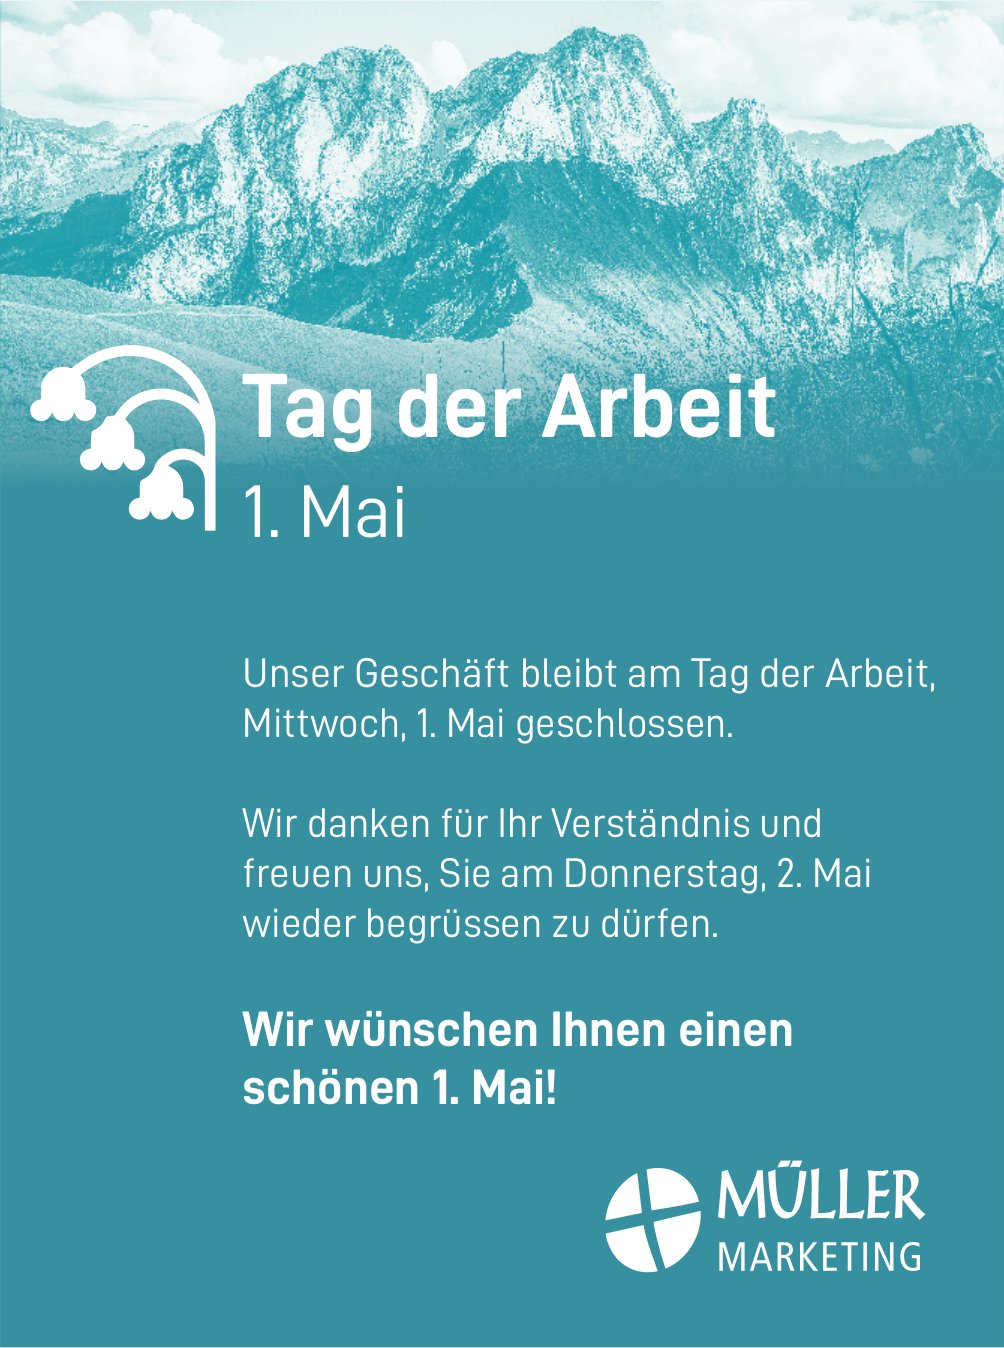 Müller Marketing - Unser Geschäft bleibt am Tag der Arbeit, Mittwoch, 1. Mai geschlossen.